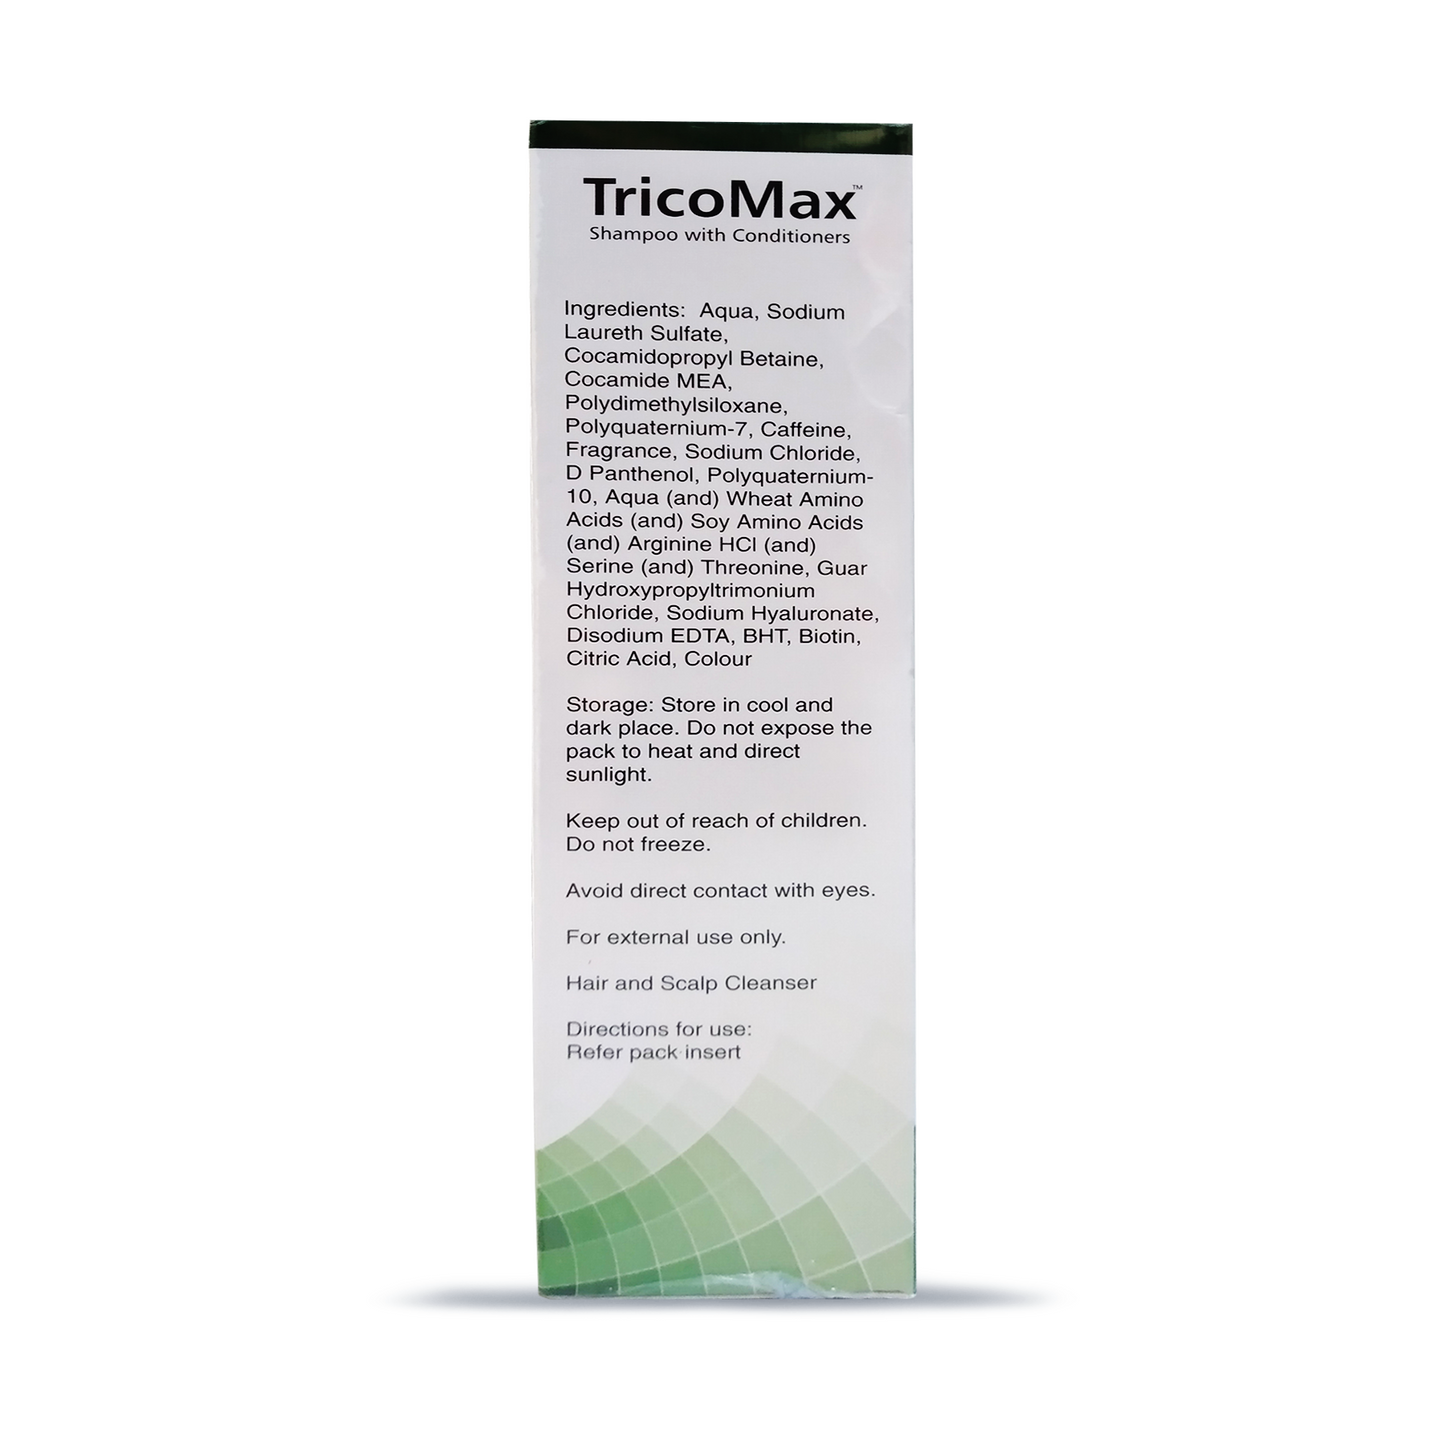 Tricomax Shampoo With Conditioner, 180ml